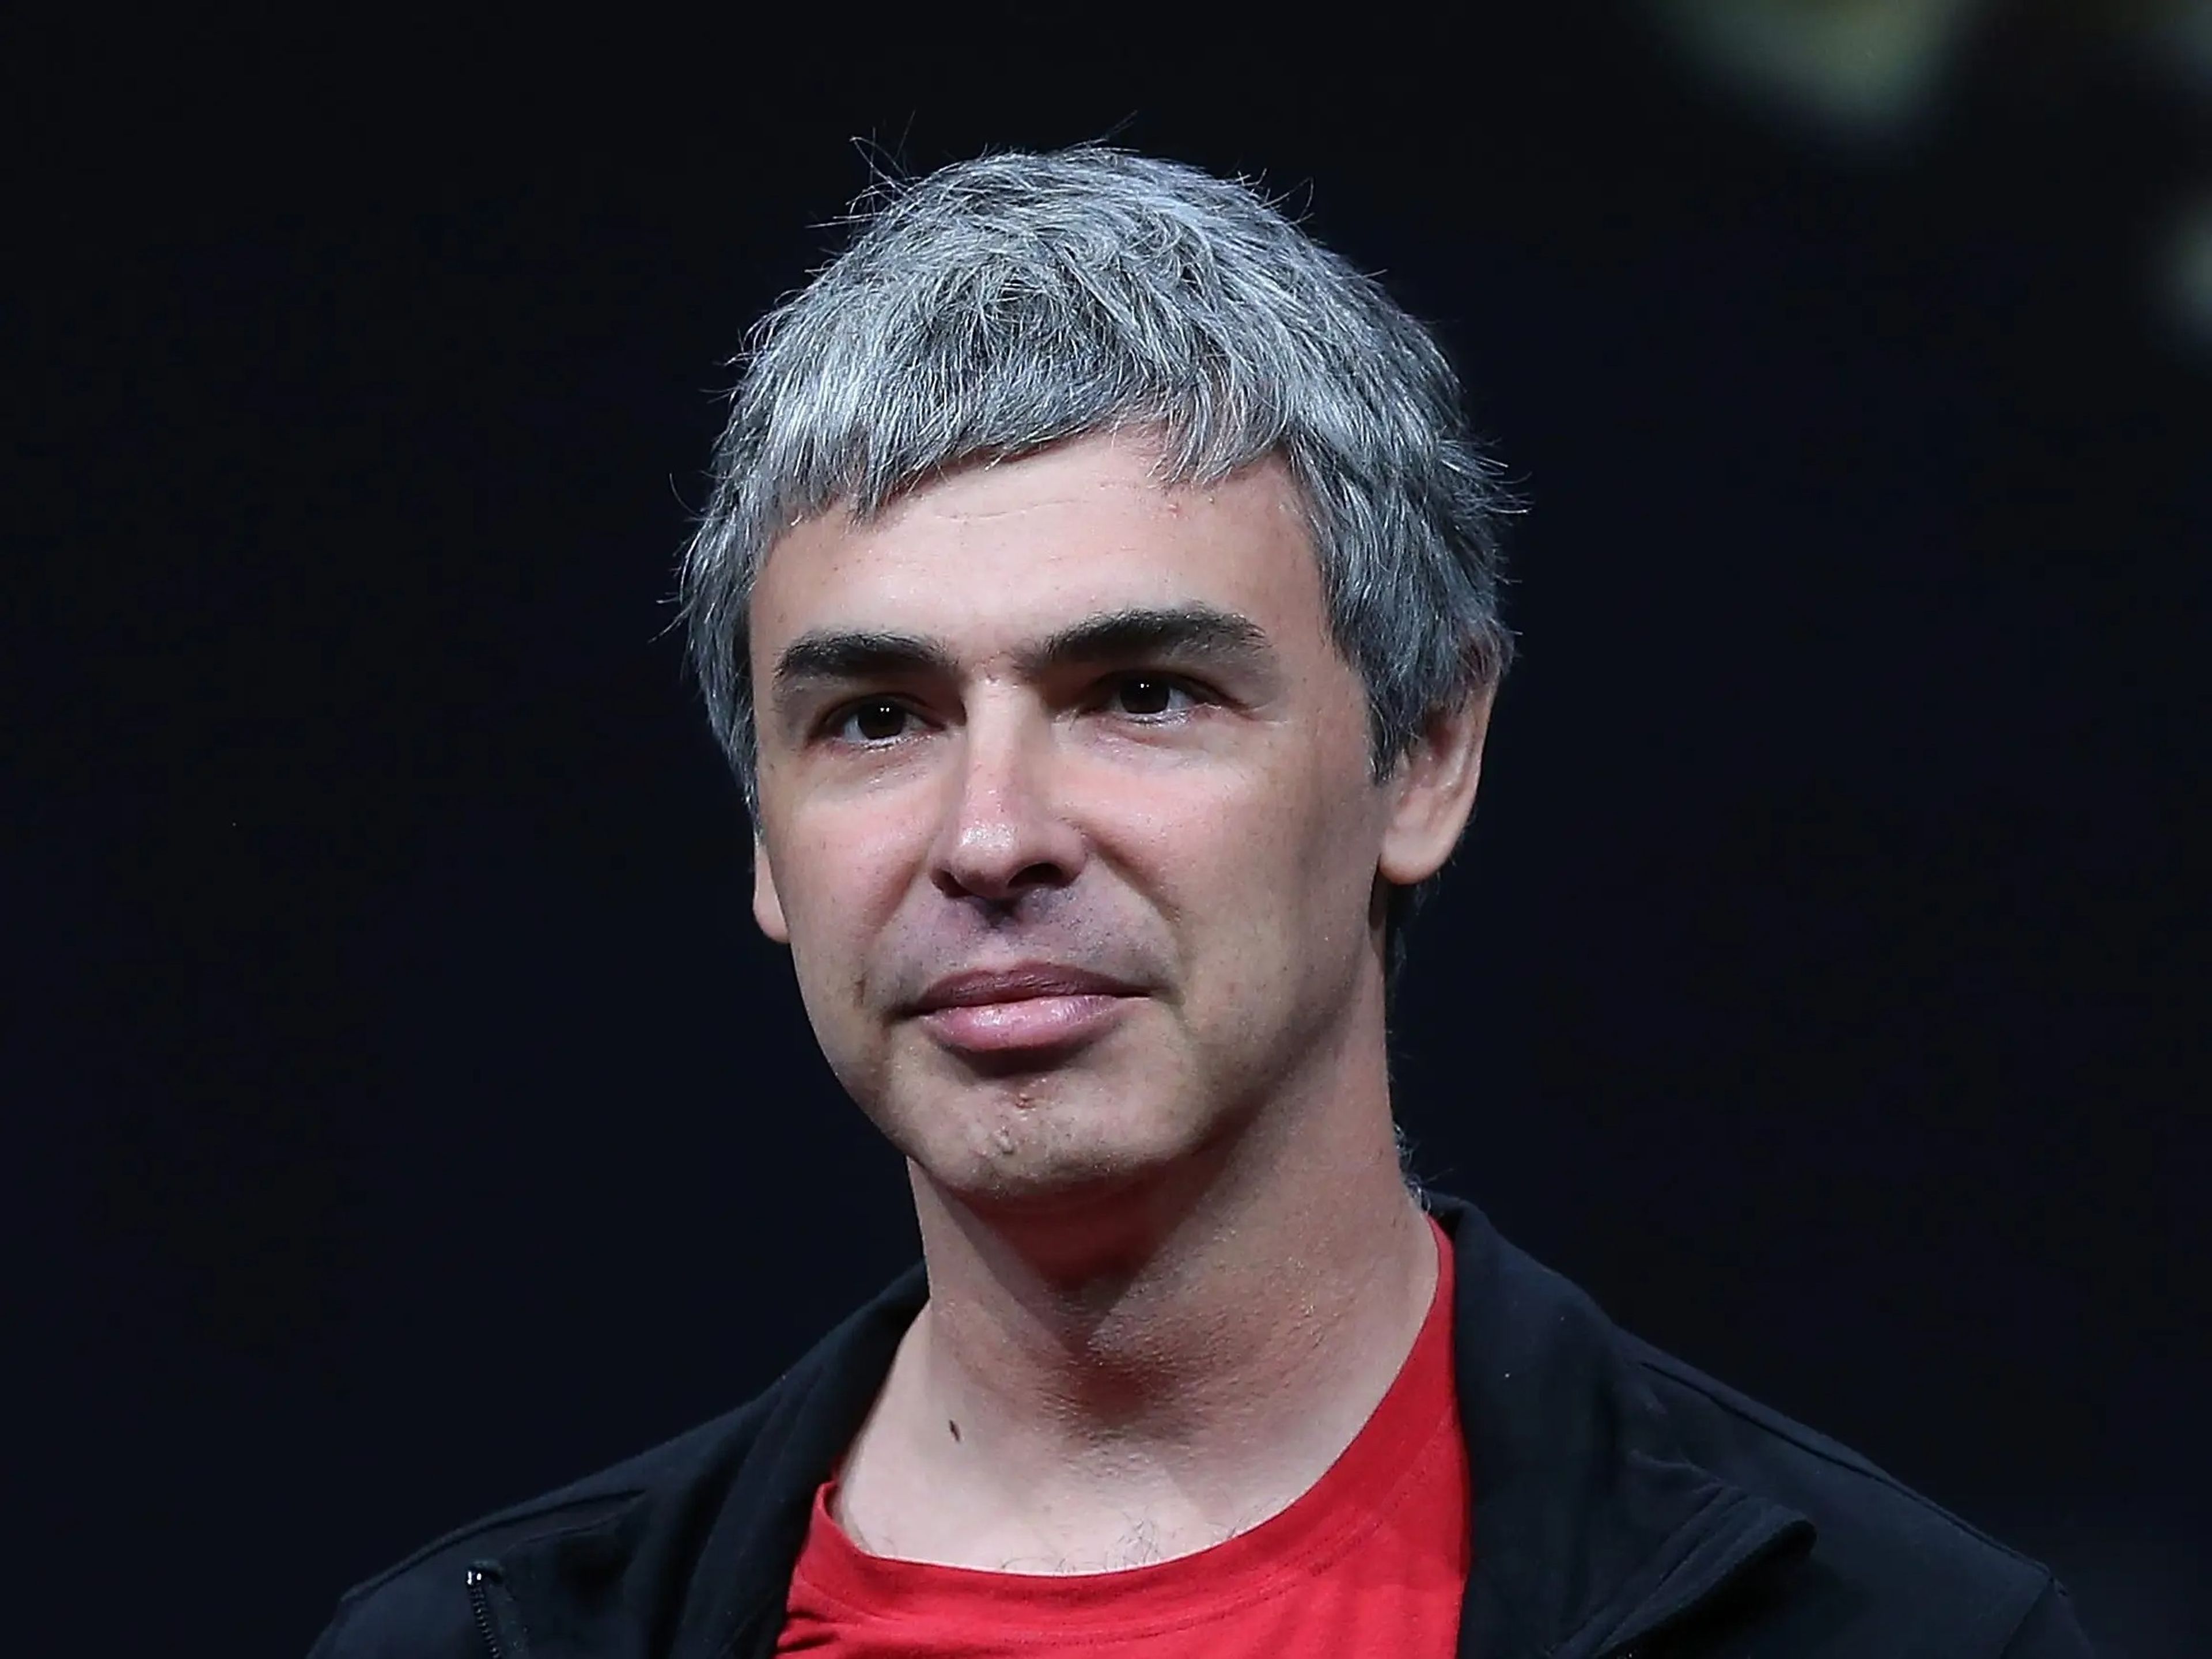 Larry Page, cofundador y consejero delegado de Google, durante el discurso de apertura de la conferencia de desarrolladores Google.